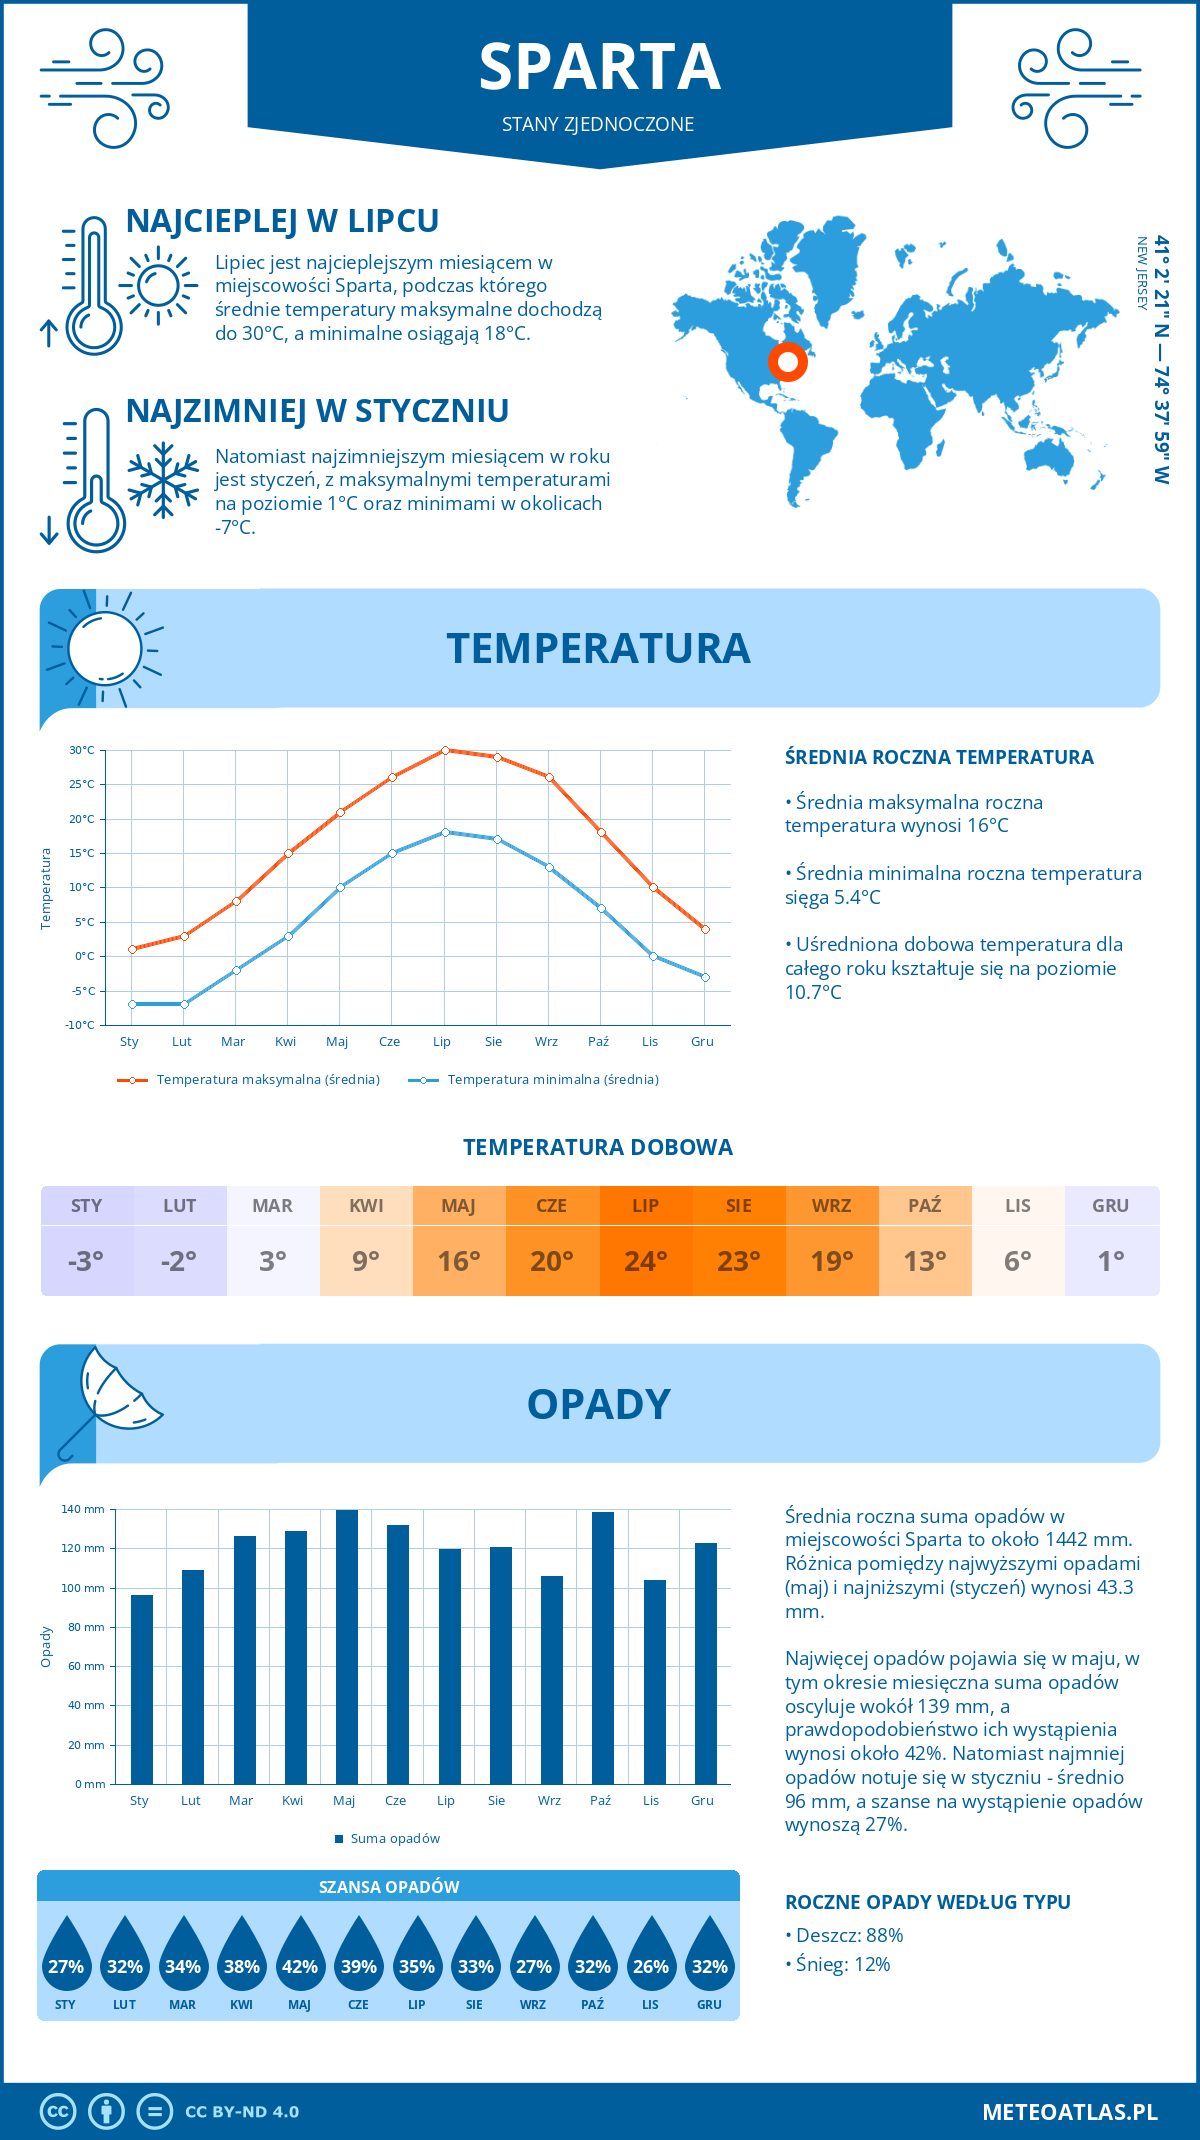 Pogoda Sparta (Stany Zjednoczone). Temperatura oraz opady.